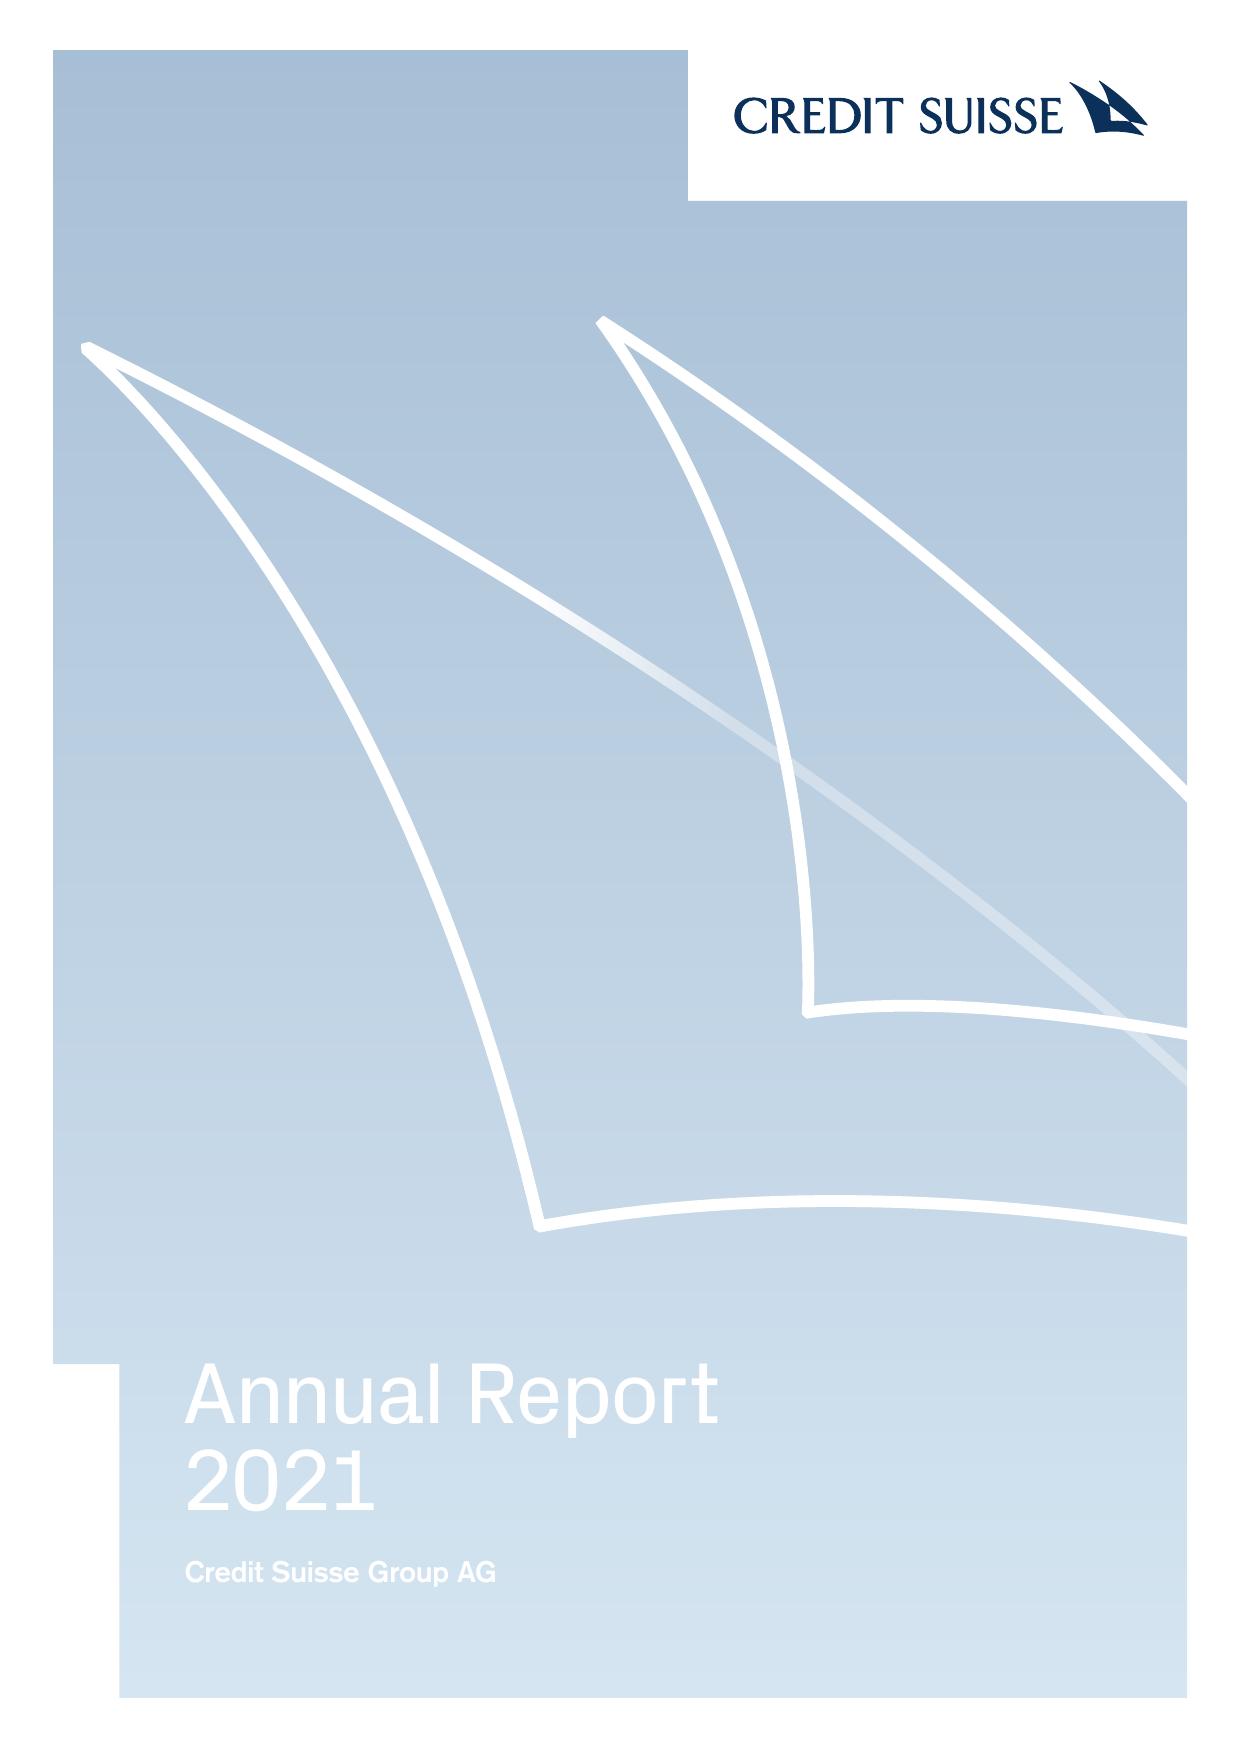 TELUS Annual Report